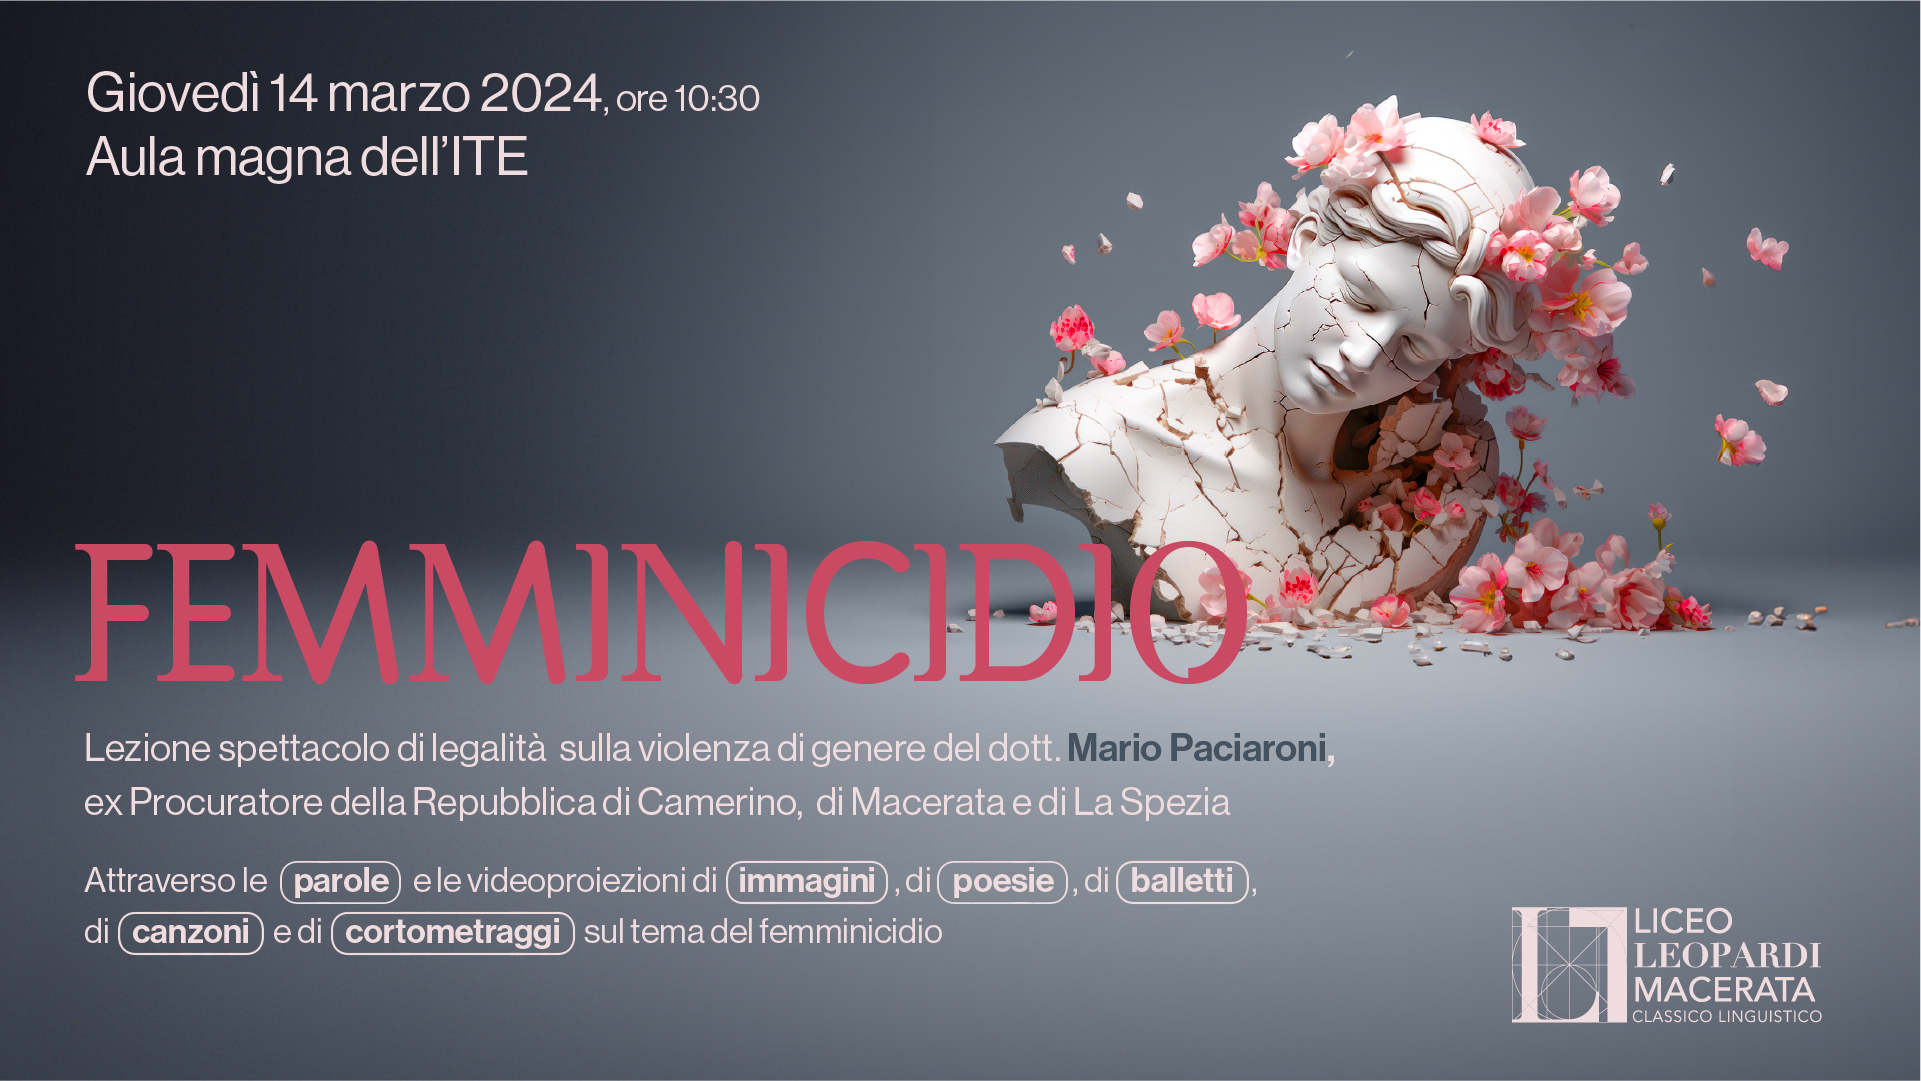 Femminicidio - Lezione spettacolo di legalità, 14 marzo - Liceo Statale G. Leopardi Macerata